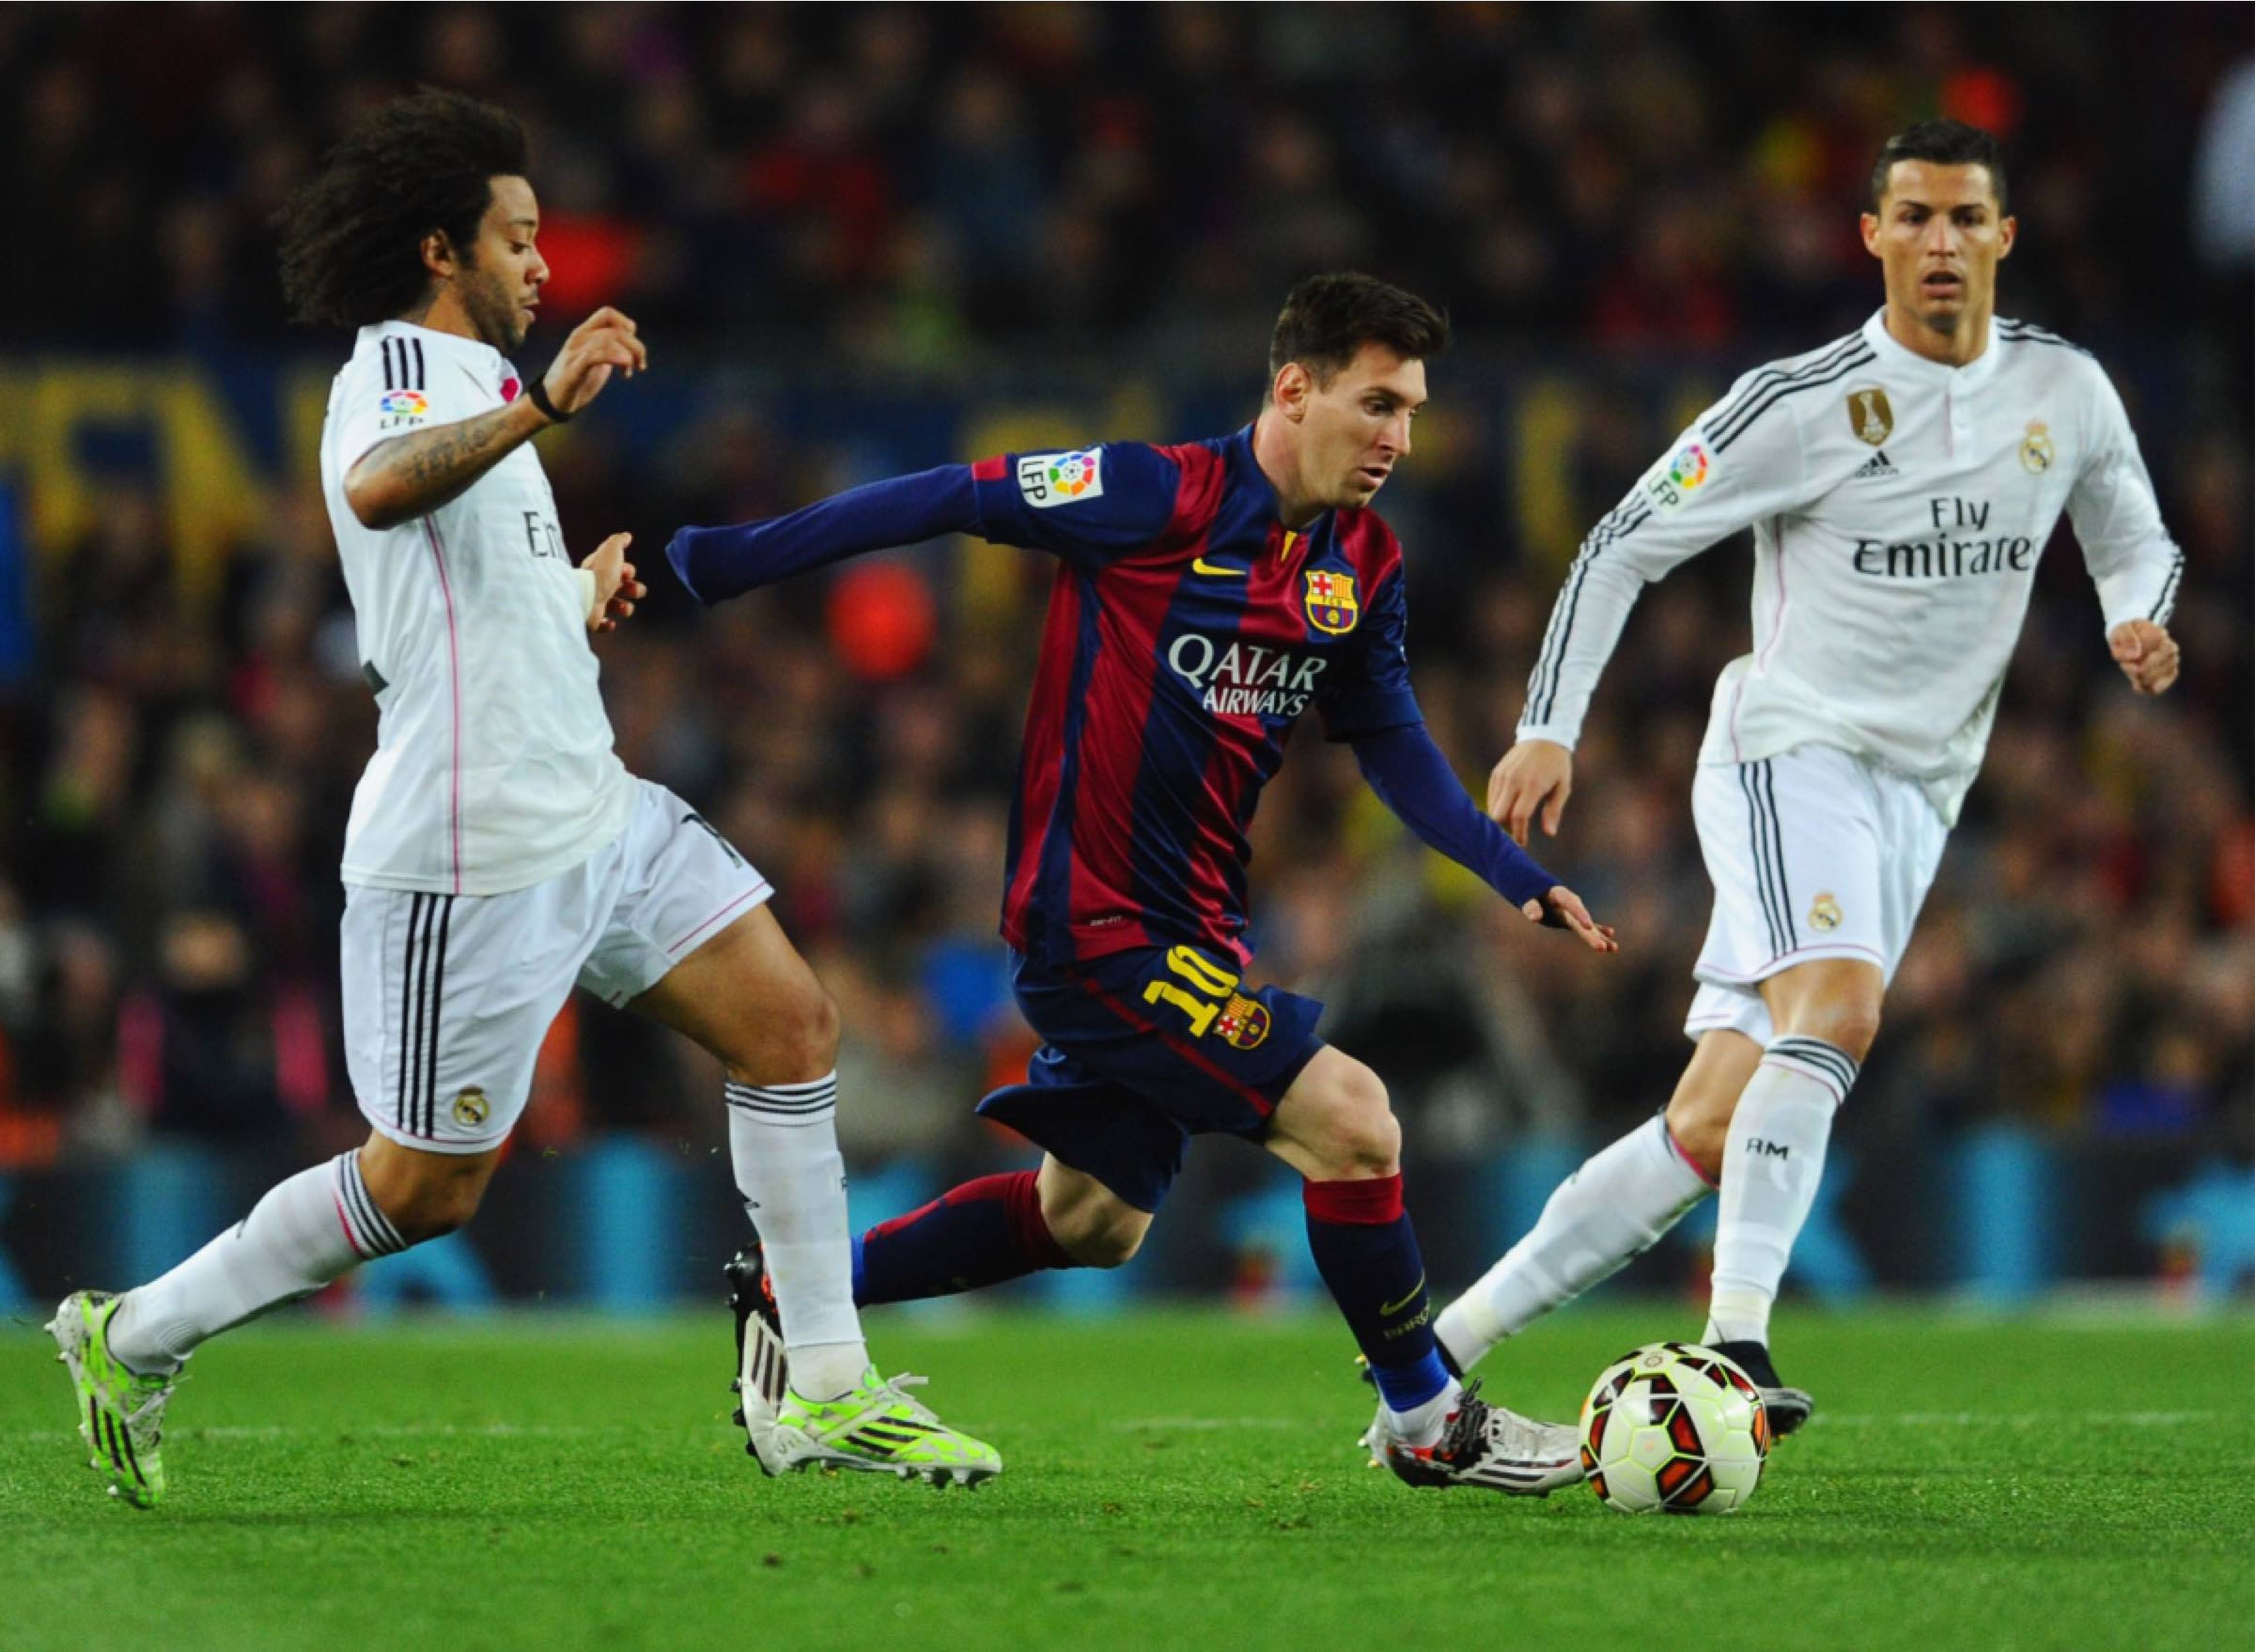 Un Real Madrid/FC Barcelona de Liga de 2015. La rivalidad entre Messi y CR7 es la mayor de la Historia del fútbol según muchos.